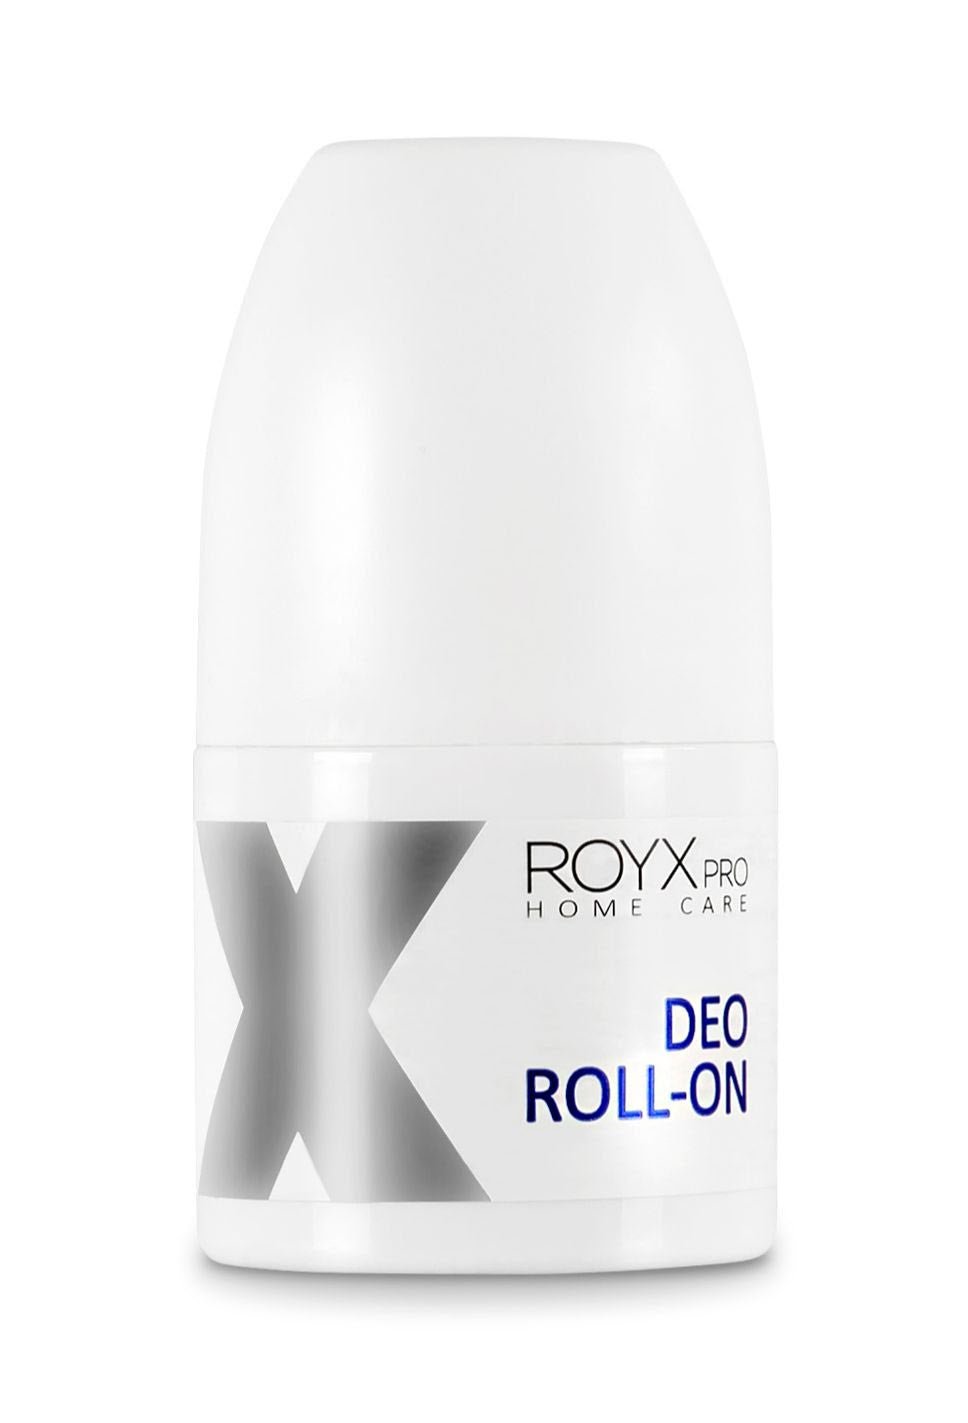 ROYX DEO ROLL-ON - Hellävarainen mutta tehokas antiperspirantti. deodorantti. tehokas deodorantti. ihoystävällinen